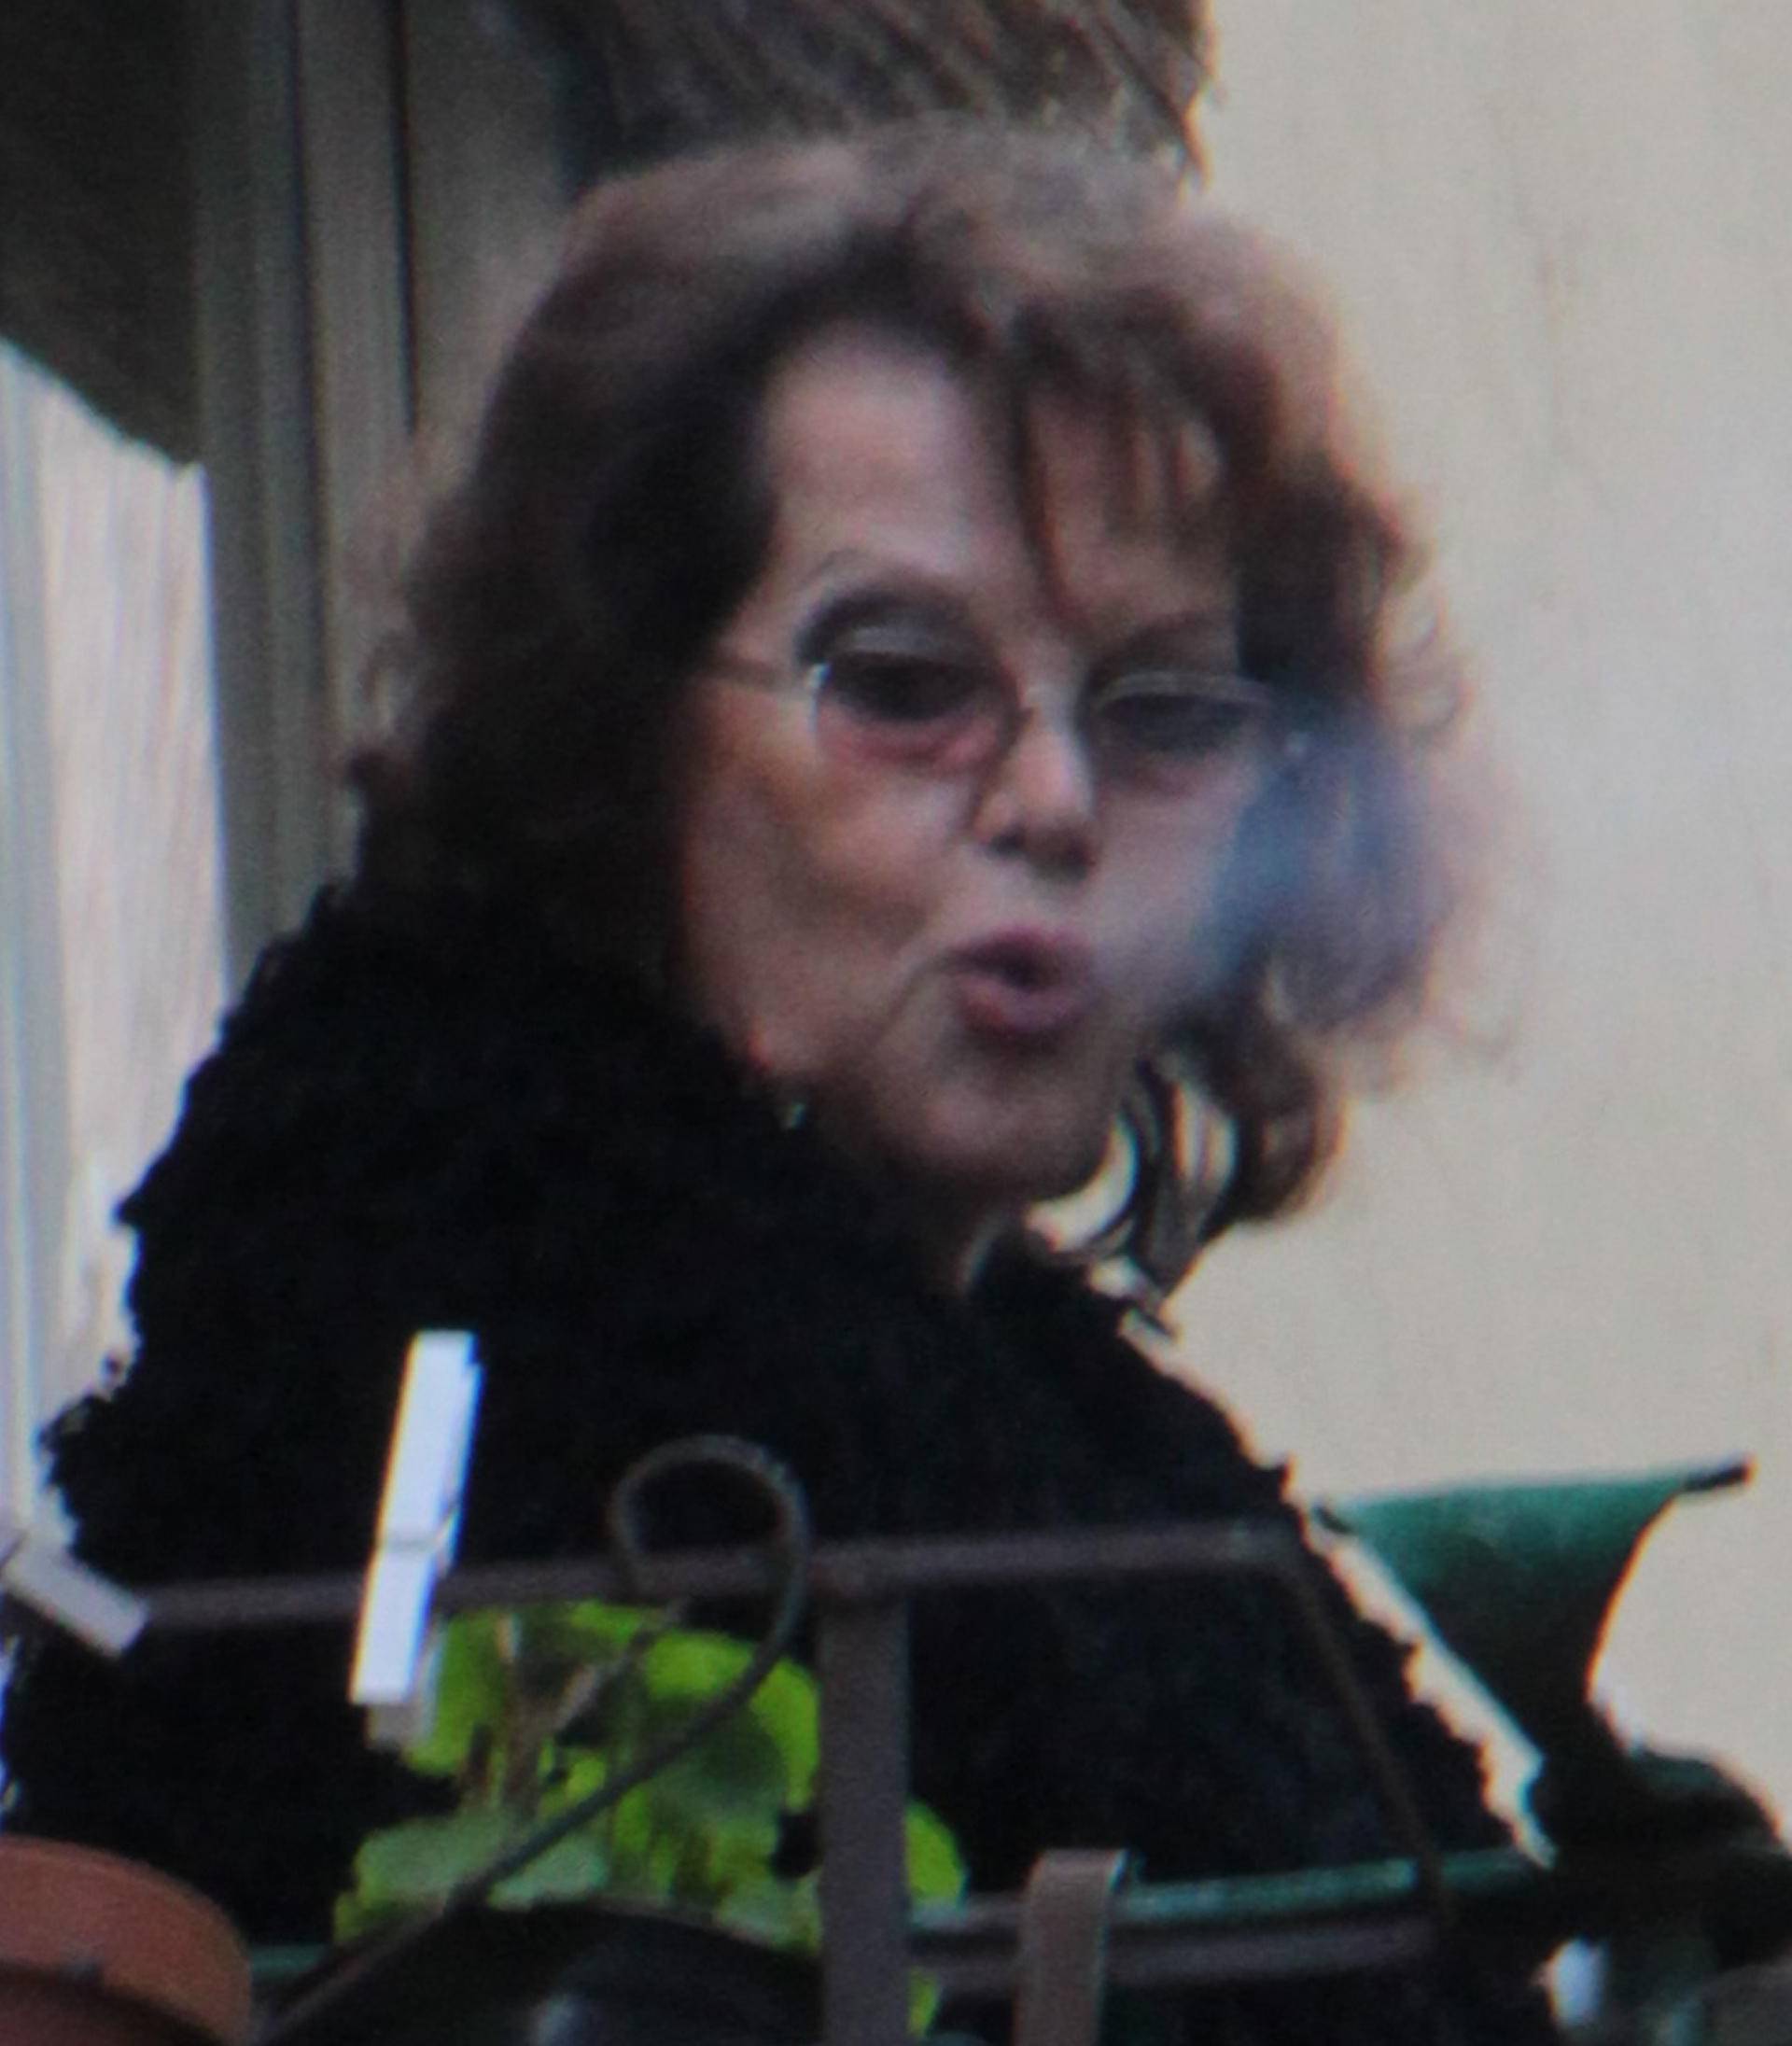 Napoli, Claudia Cardinale smoke on the balcony